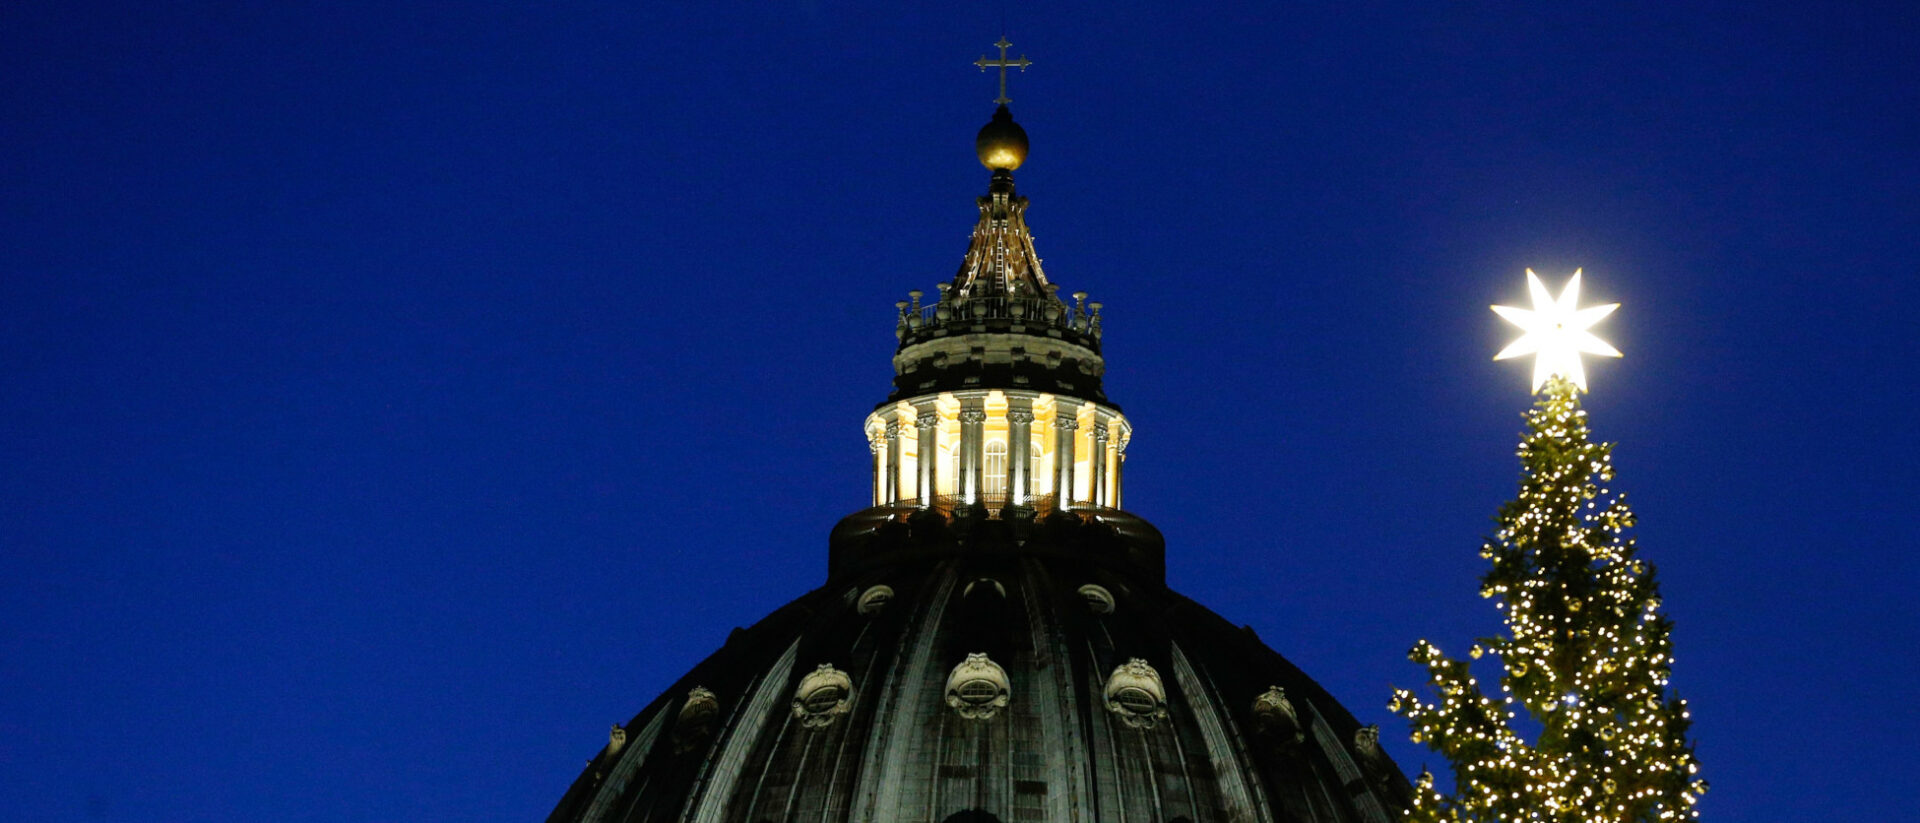 Der erleuchtete Christbaum mit einem Stern auf der Spitze auf dem Petersplatz neben der Kuppel des Petersdoms am 5. Dezember 2019 im Vatikan.